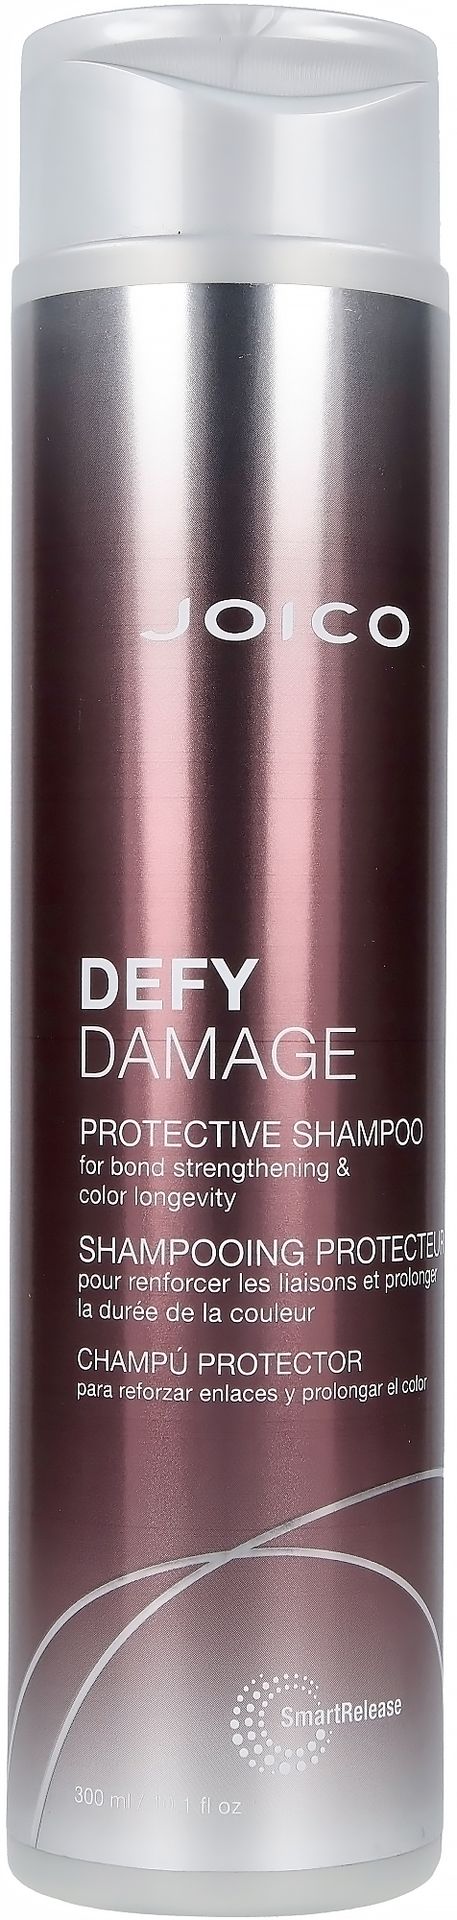 Joico Defy Damage Protective Defy Damage Szampon do włosów  300 ml